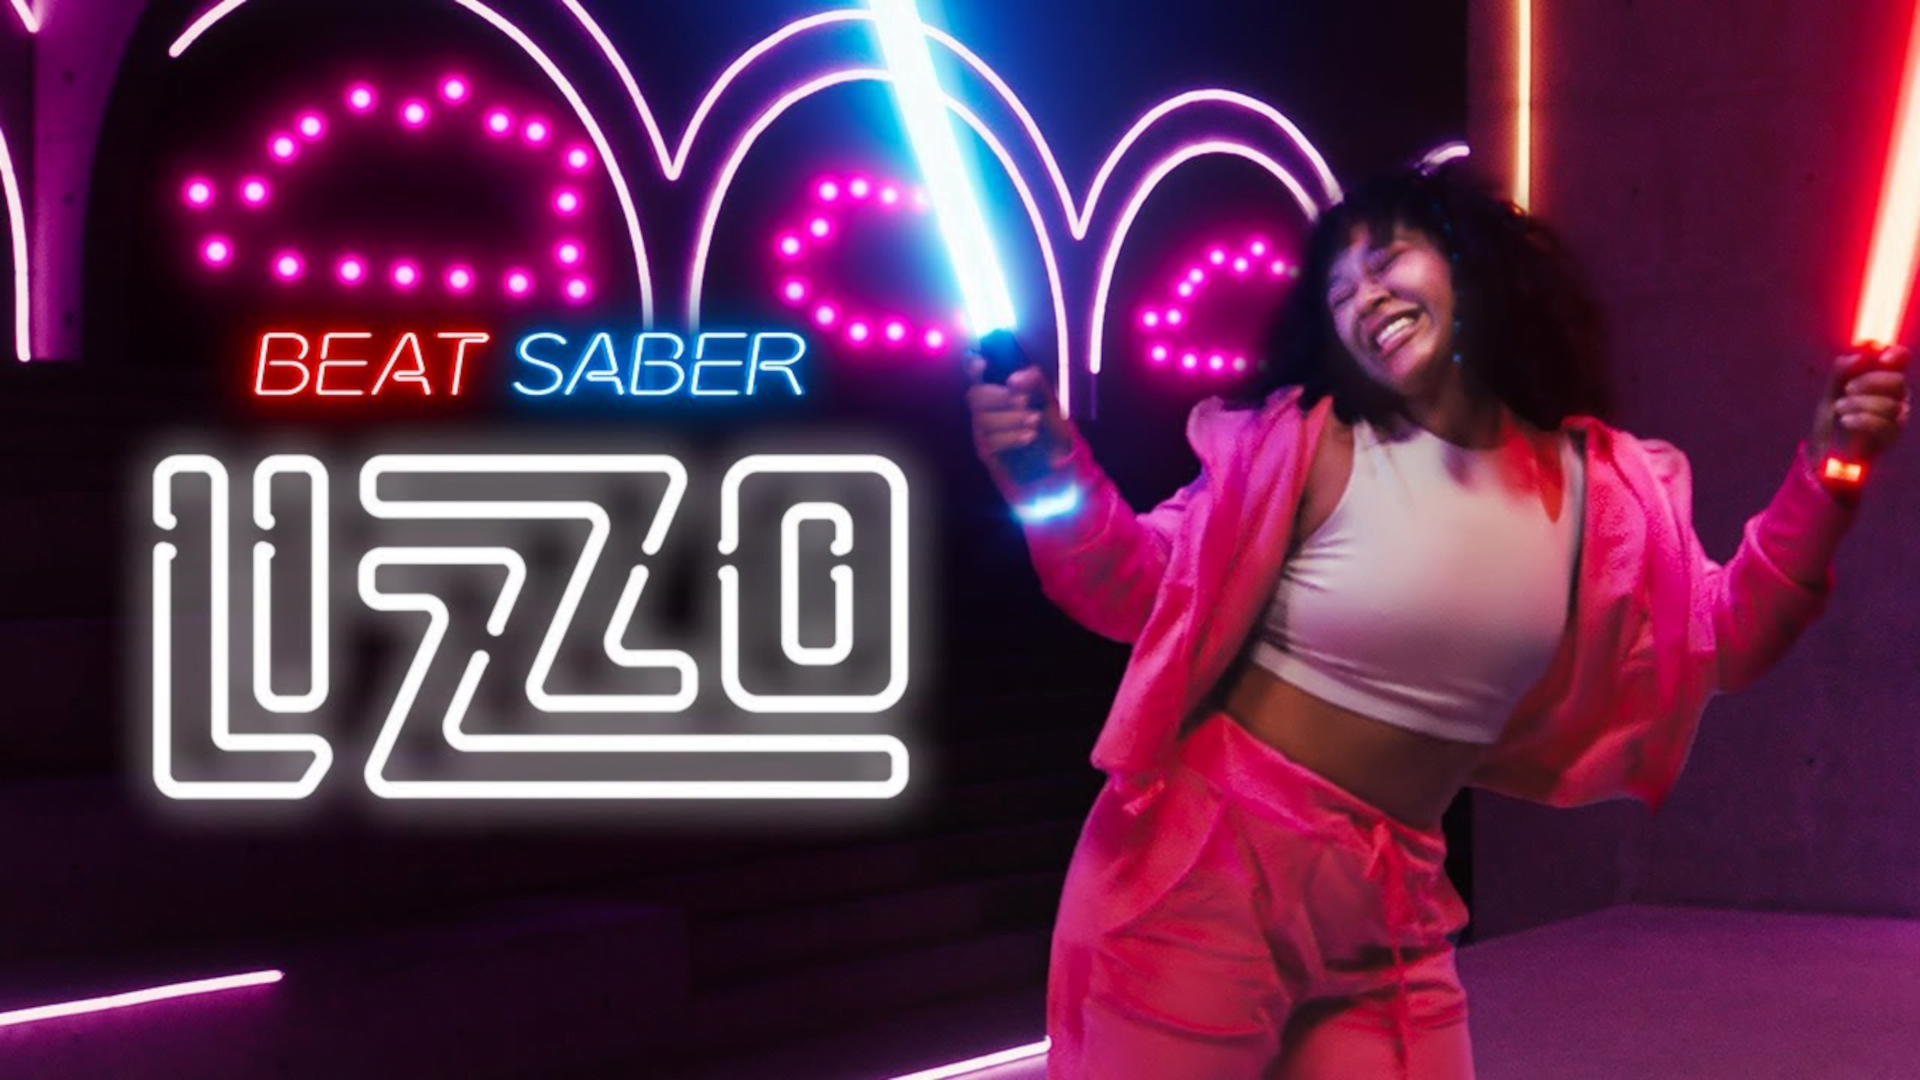 Lizzo in Beat Saber: Song-Paket bringt Neuheiten und Klassiker